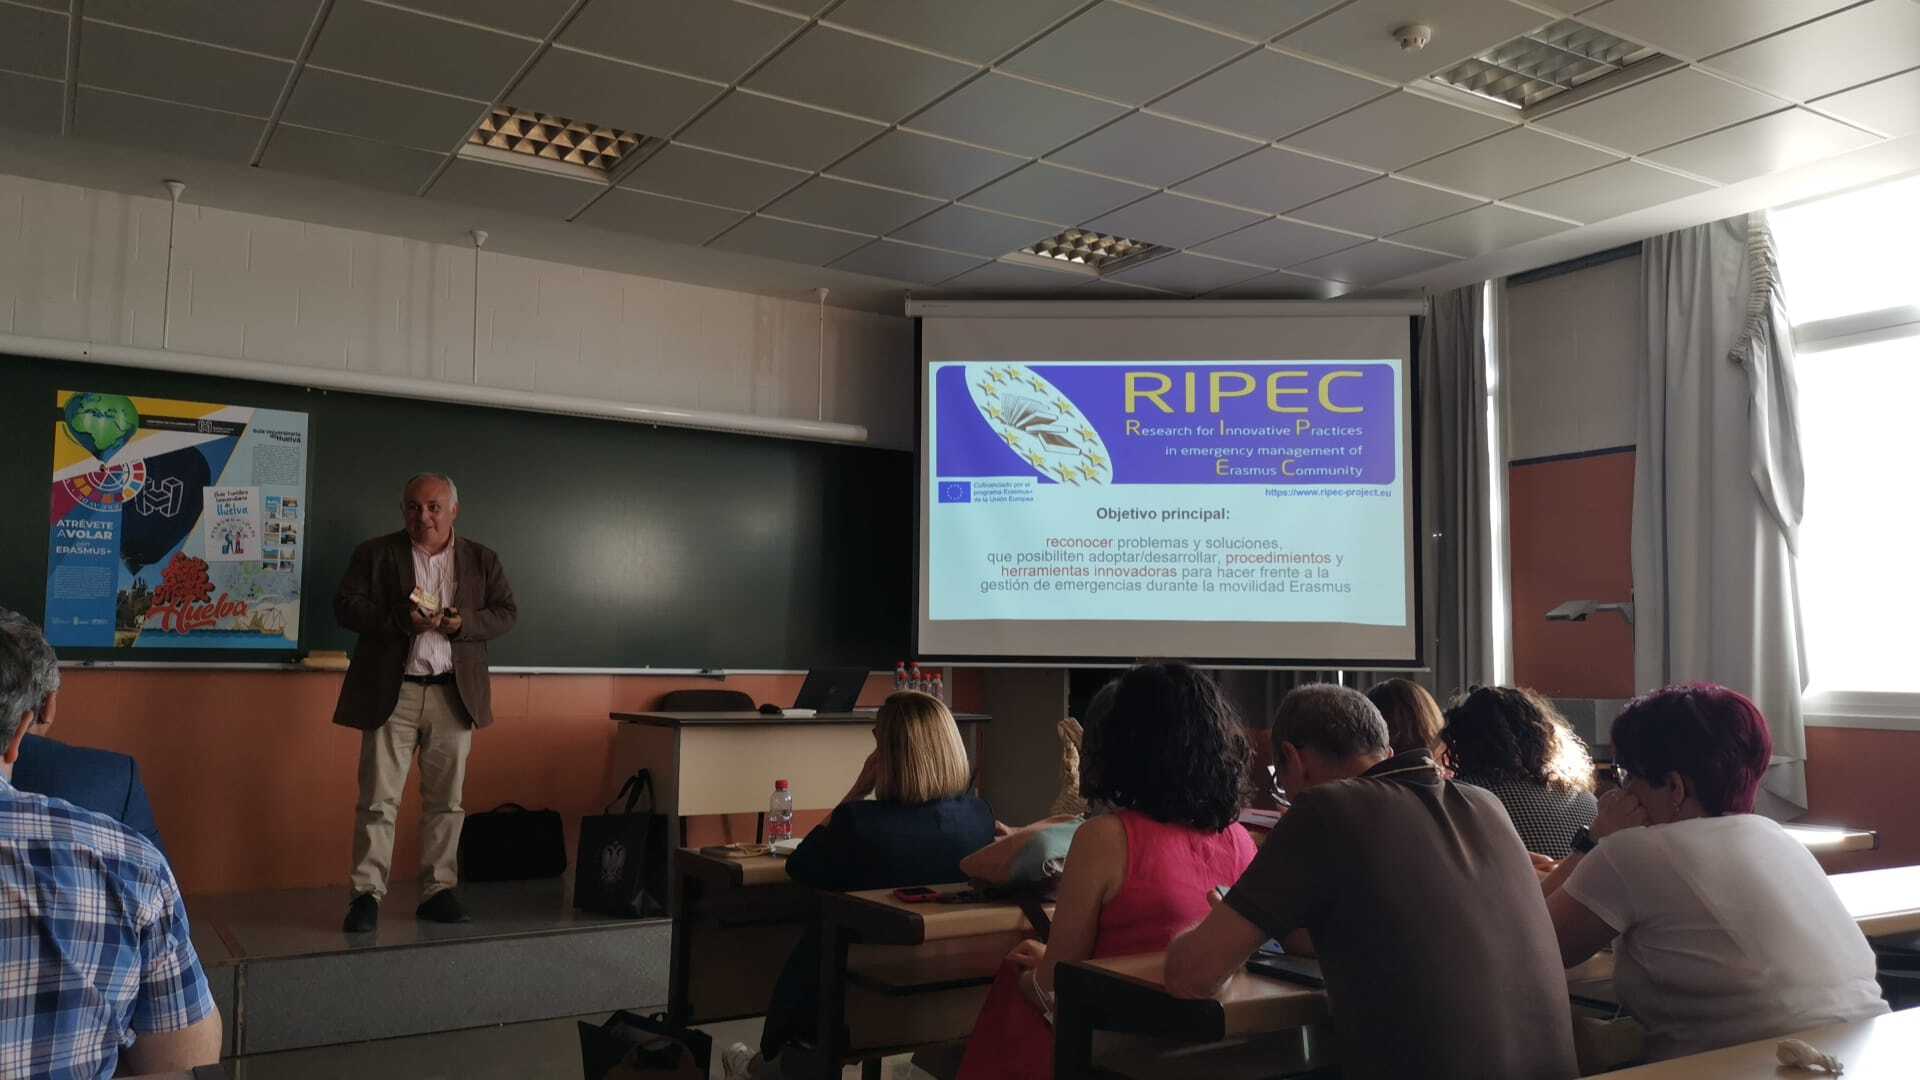 Dissemination of RIPEC